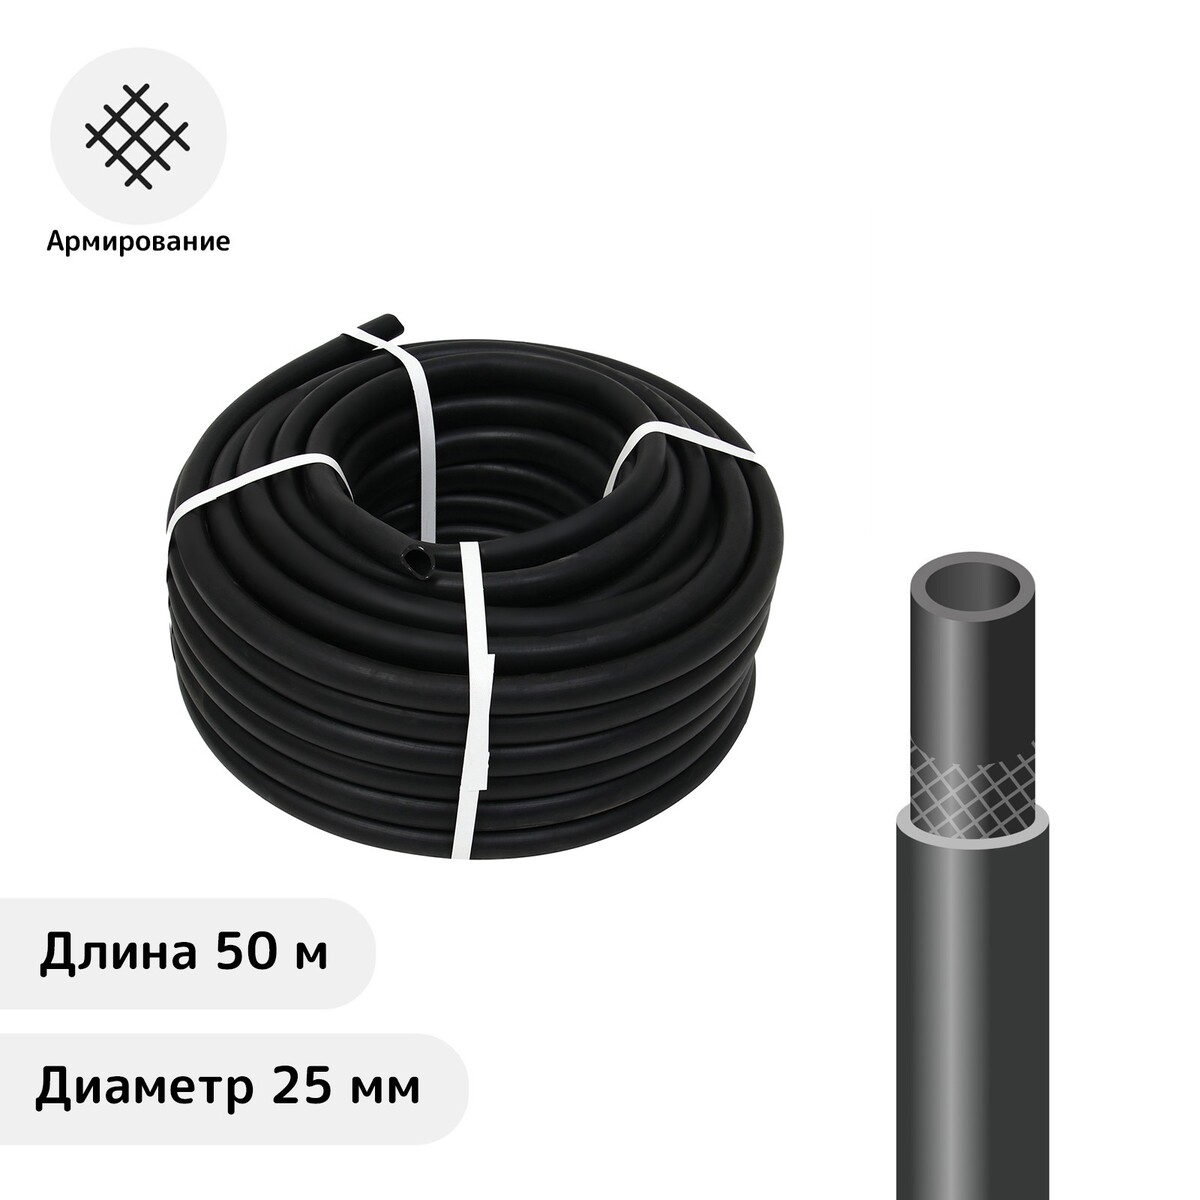 Шланг резиновый, d = 25 мм, l = 50 м, армированный, черный, No brand